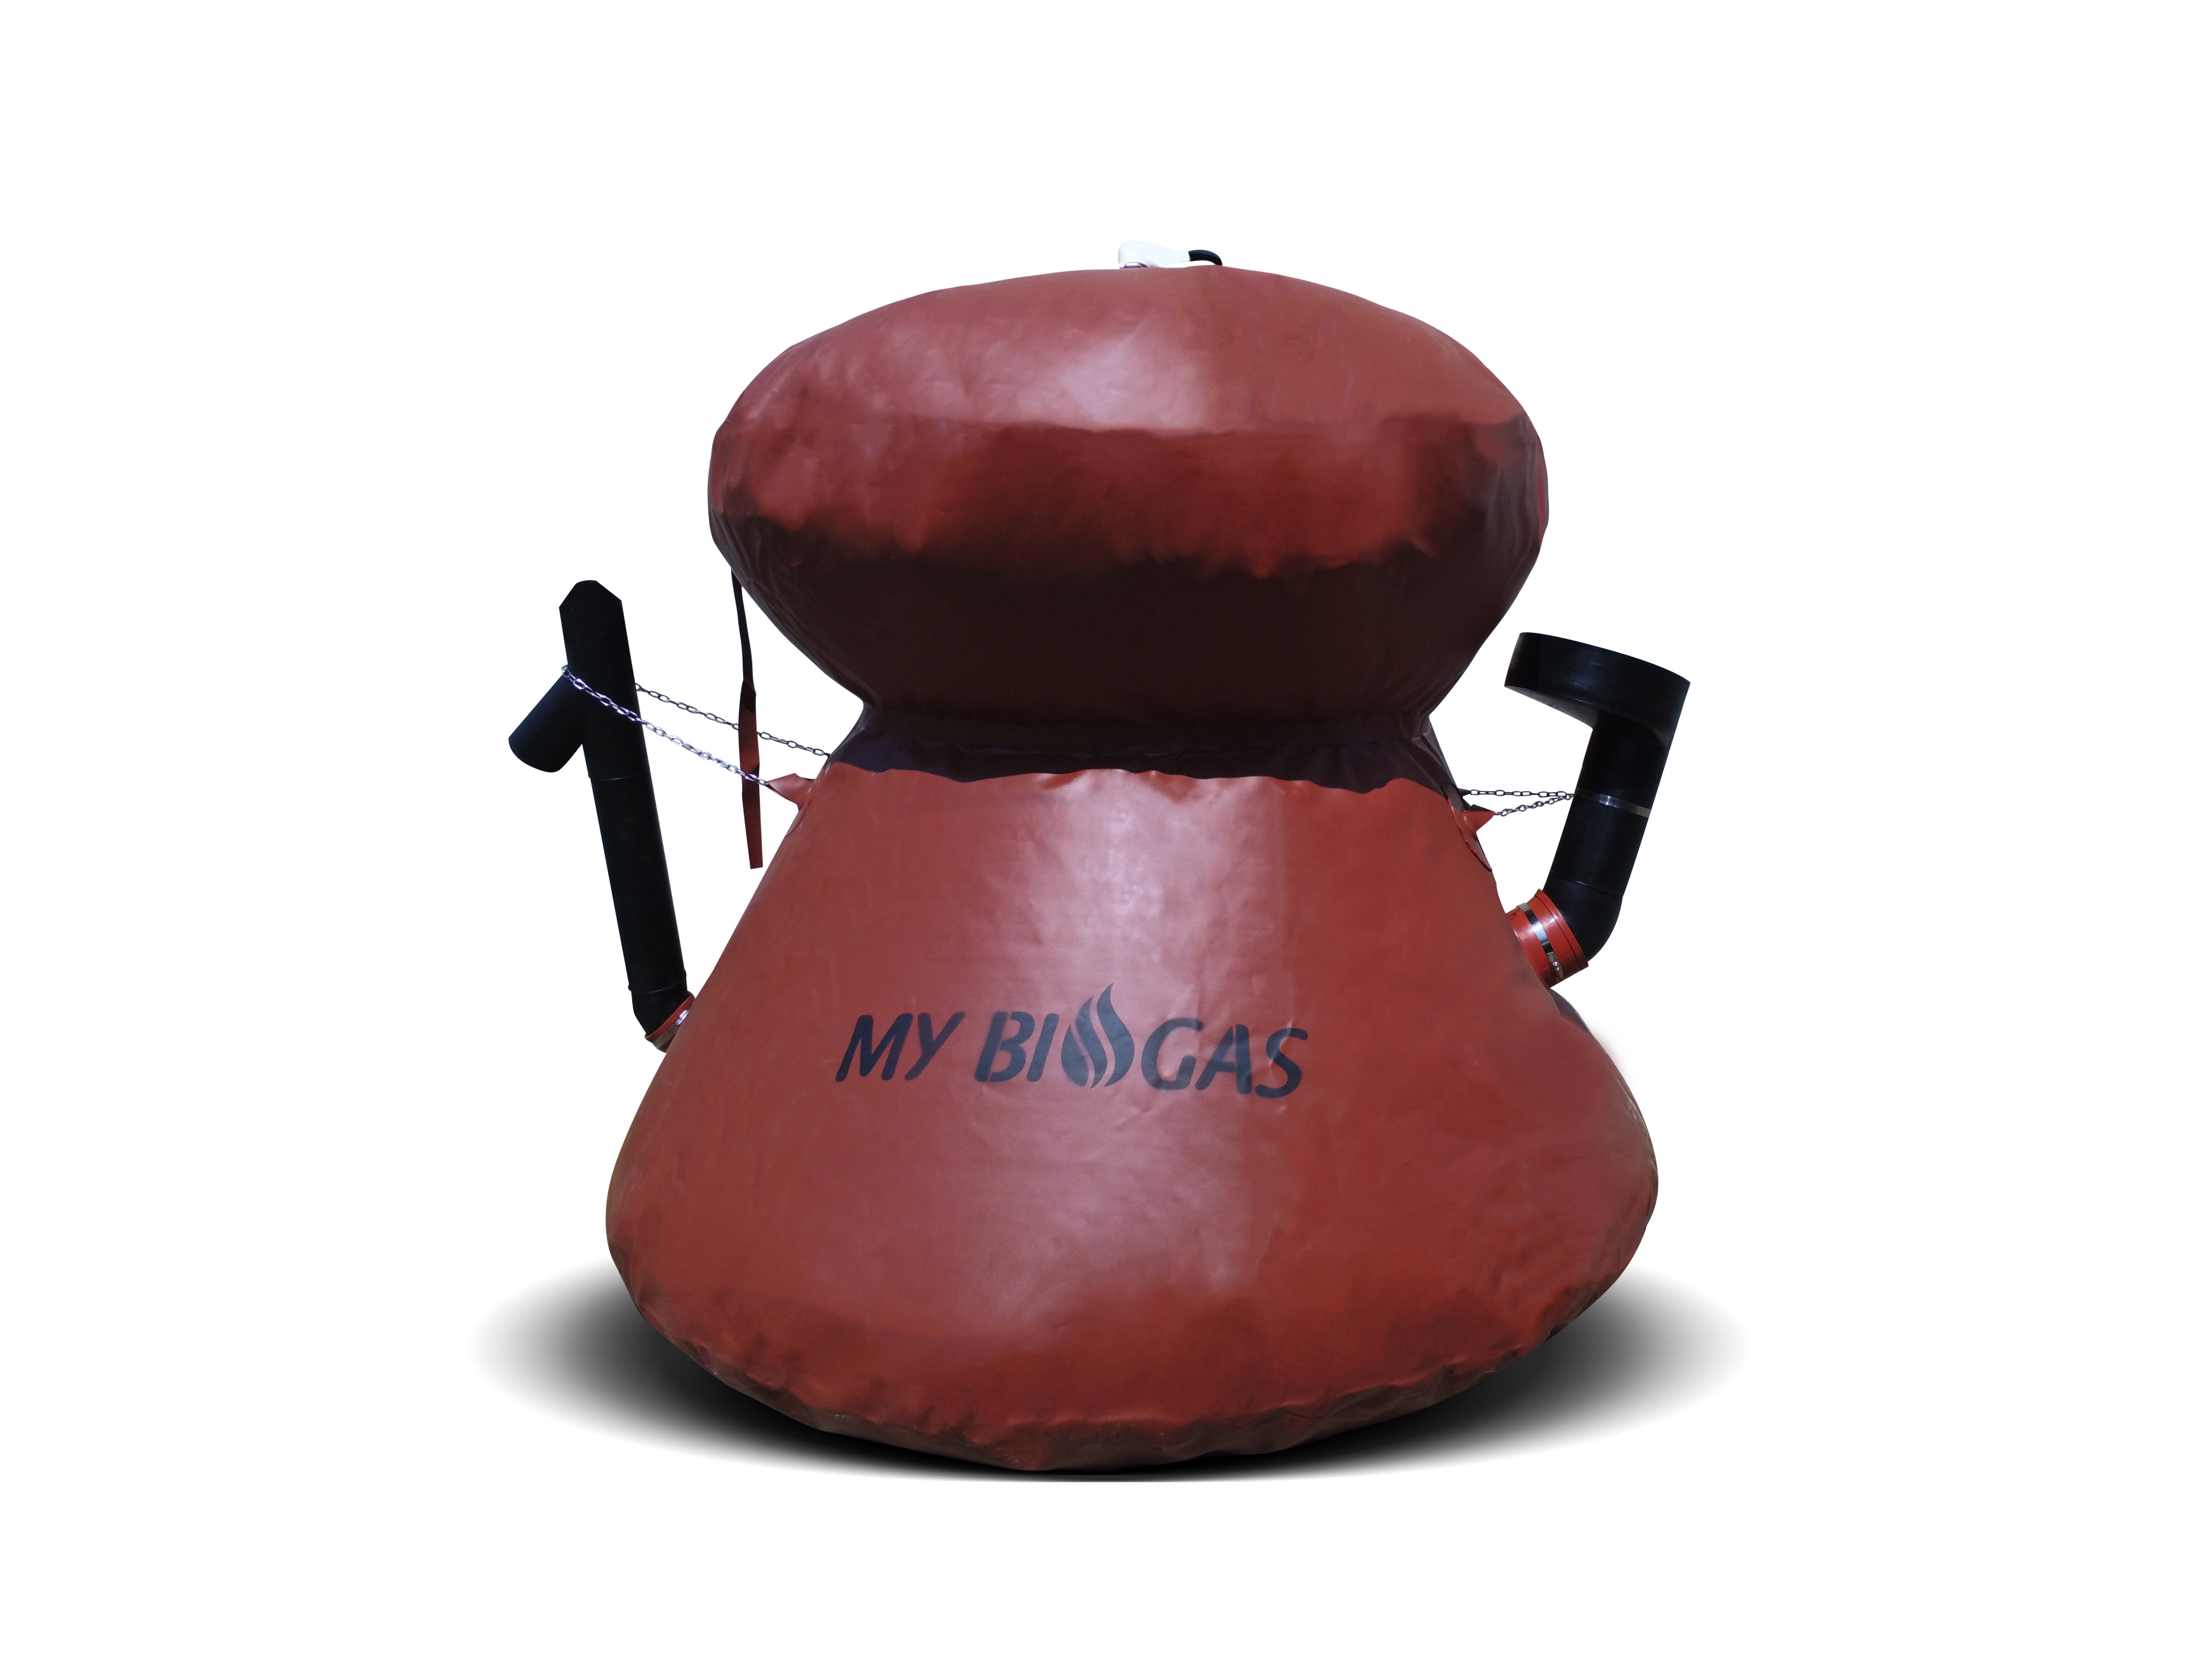 Méthaniseur domestique MY BIOGAS+ 1 m3  avec réchaud, production de biogaz. Biodigesteur